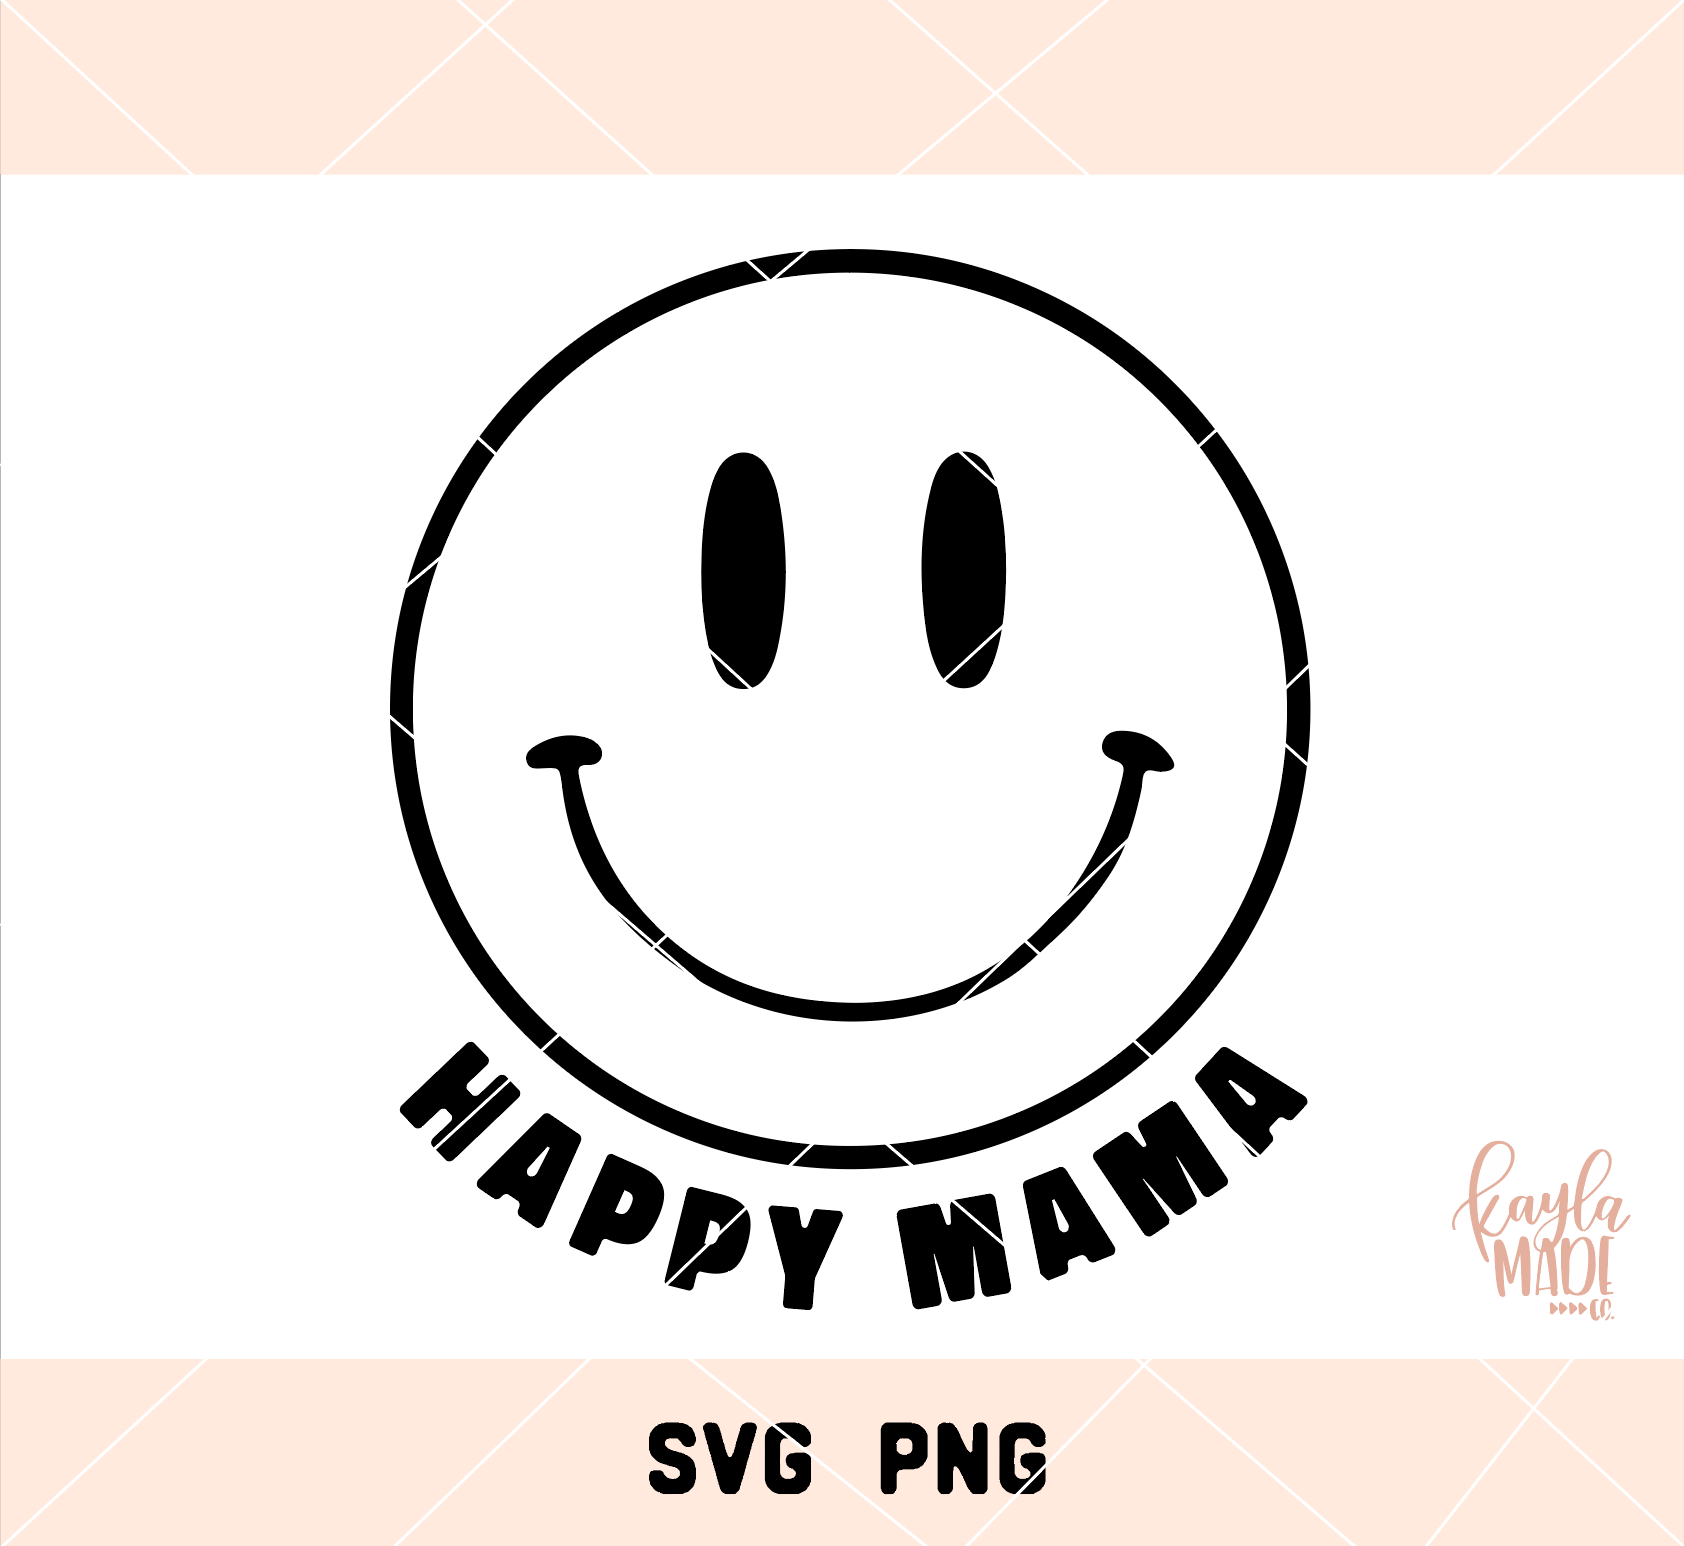 IMG_0193_1024x1024 - One Happy Mama